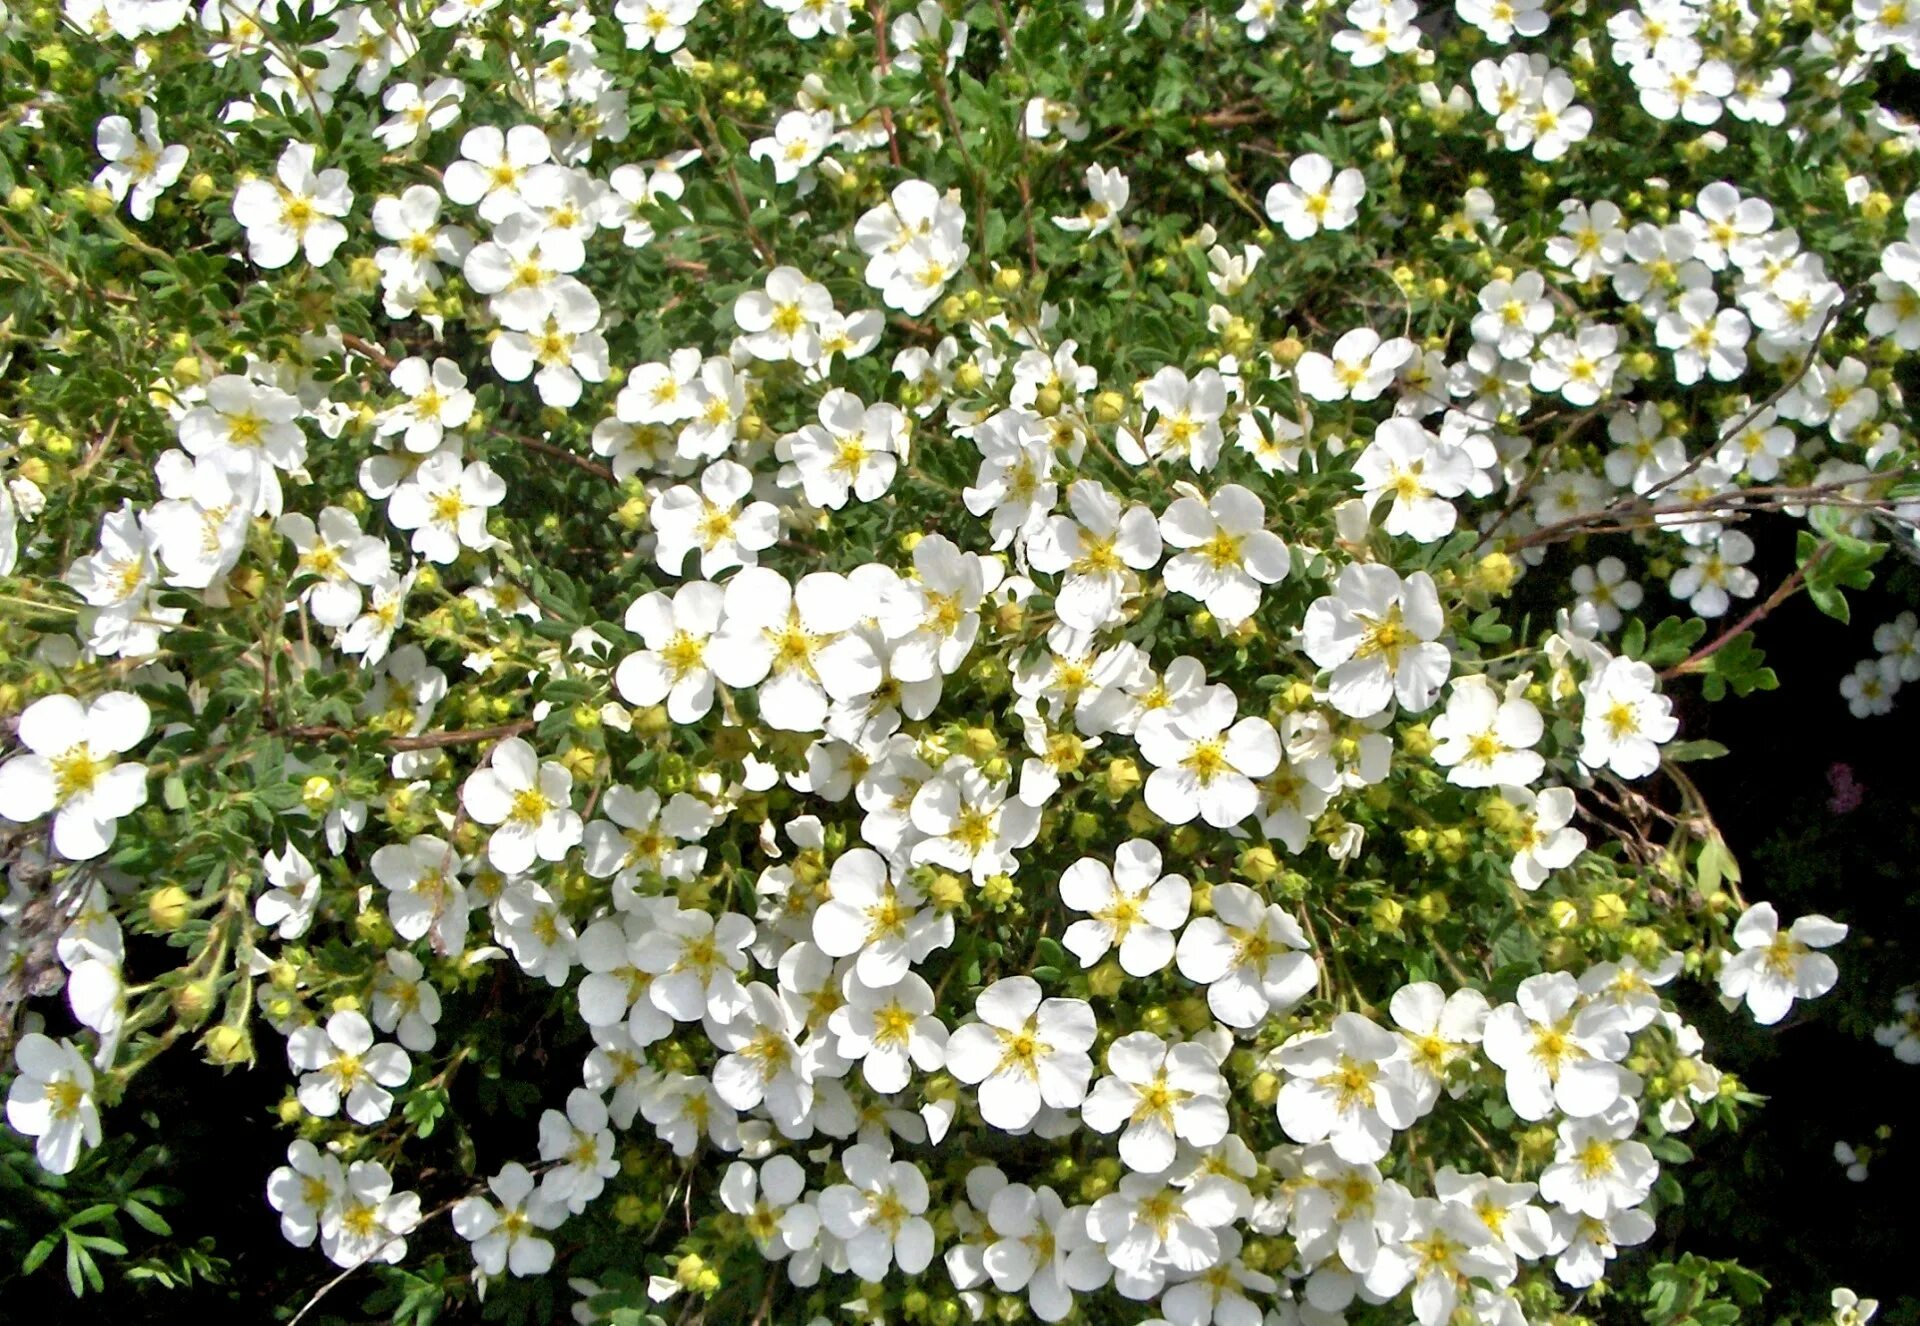 Мелкие белые цветы. Маленькие белые цветочки. Цветок с маленькими белыми цветочками. Растение с мелкими белыми цветами. Название цветов мелкие белого цвета